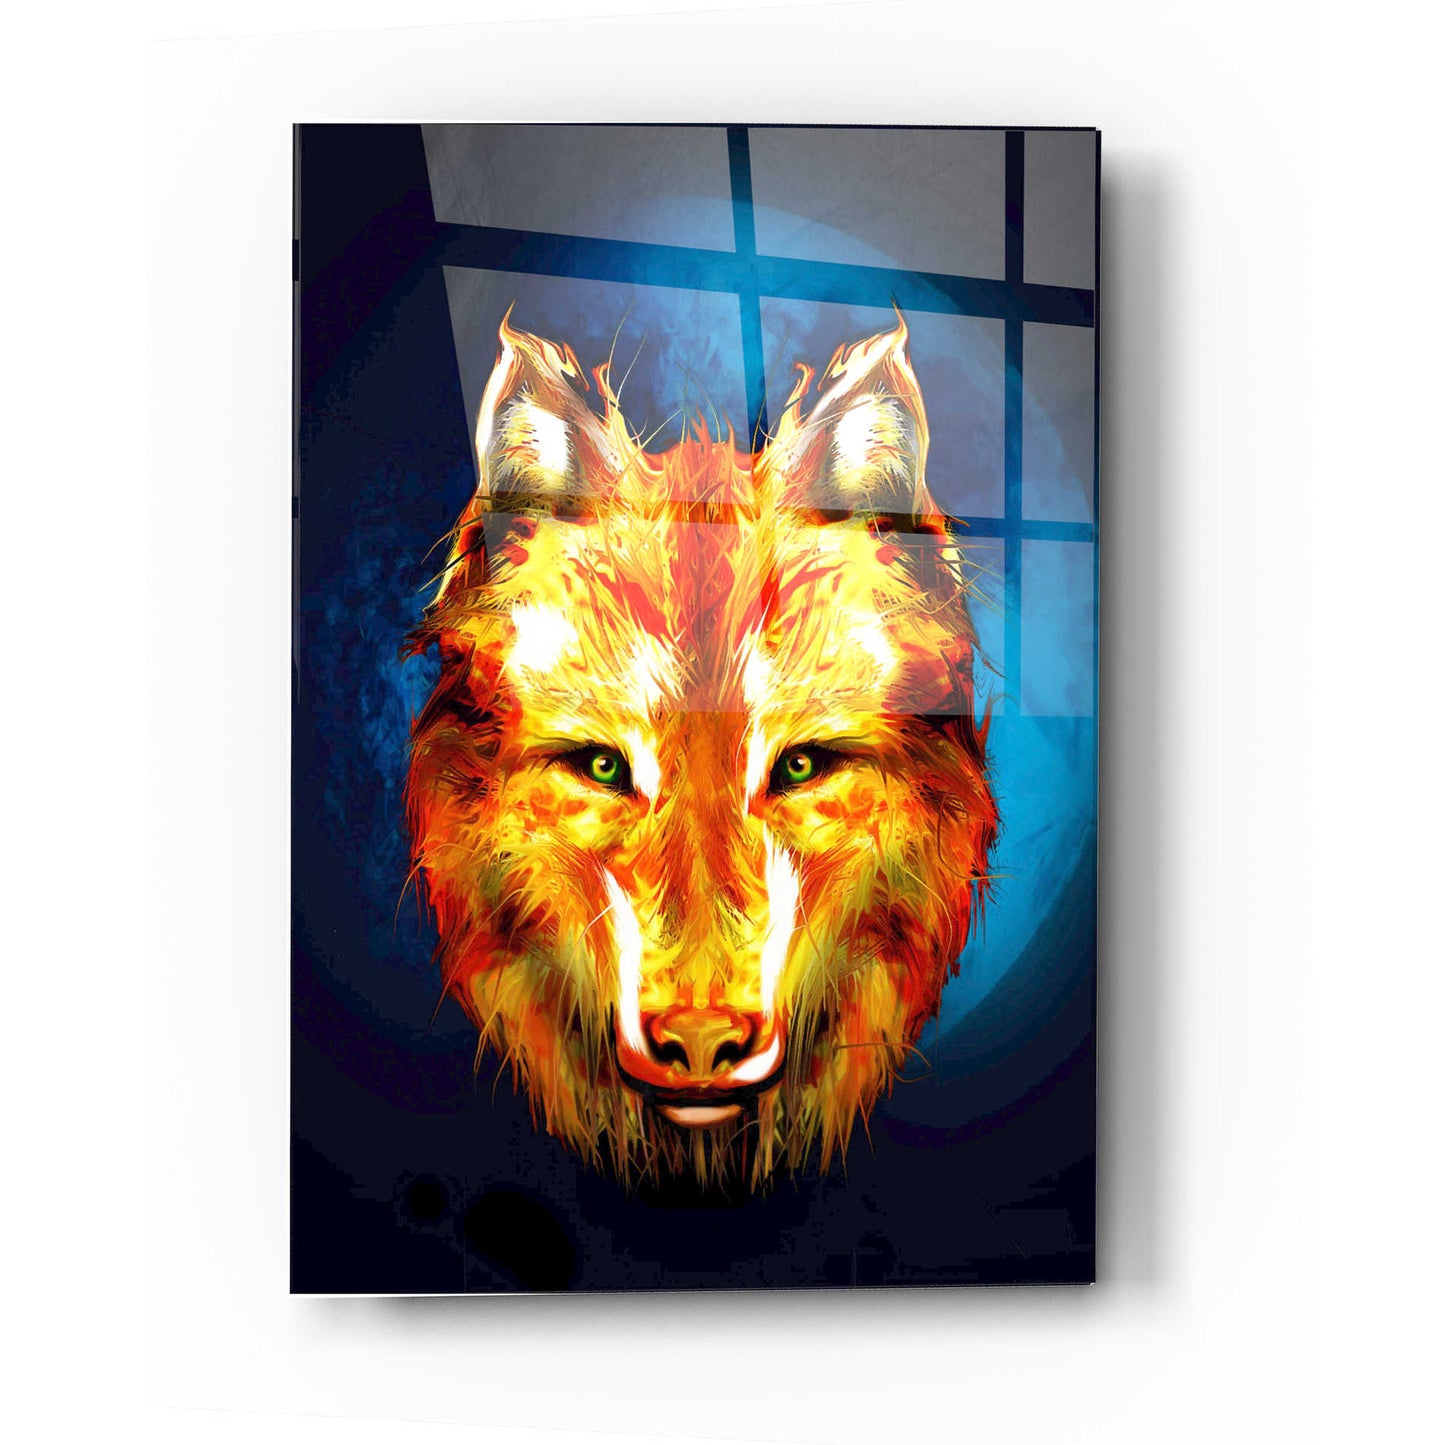 Epic Art 'Lone Wolf' by Michael Stewart, Acrylic Glass Wall Art,24x36